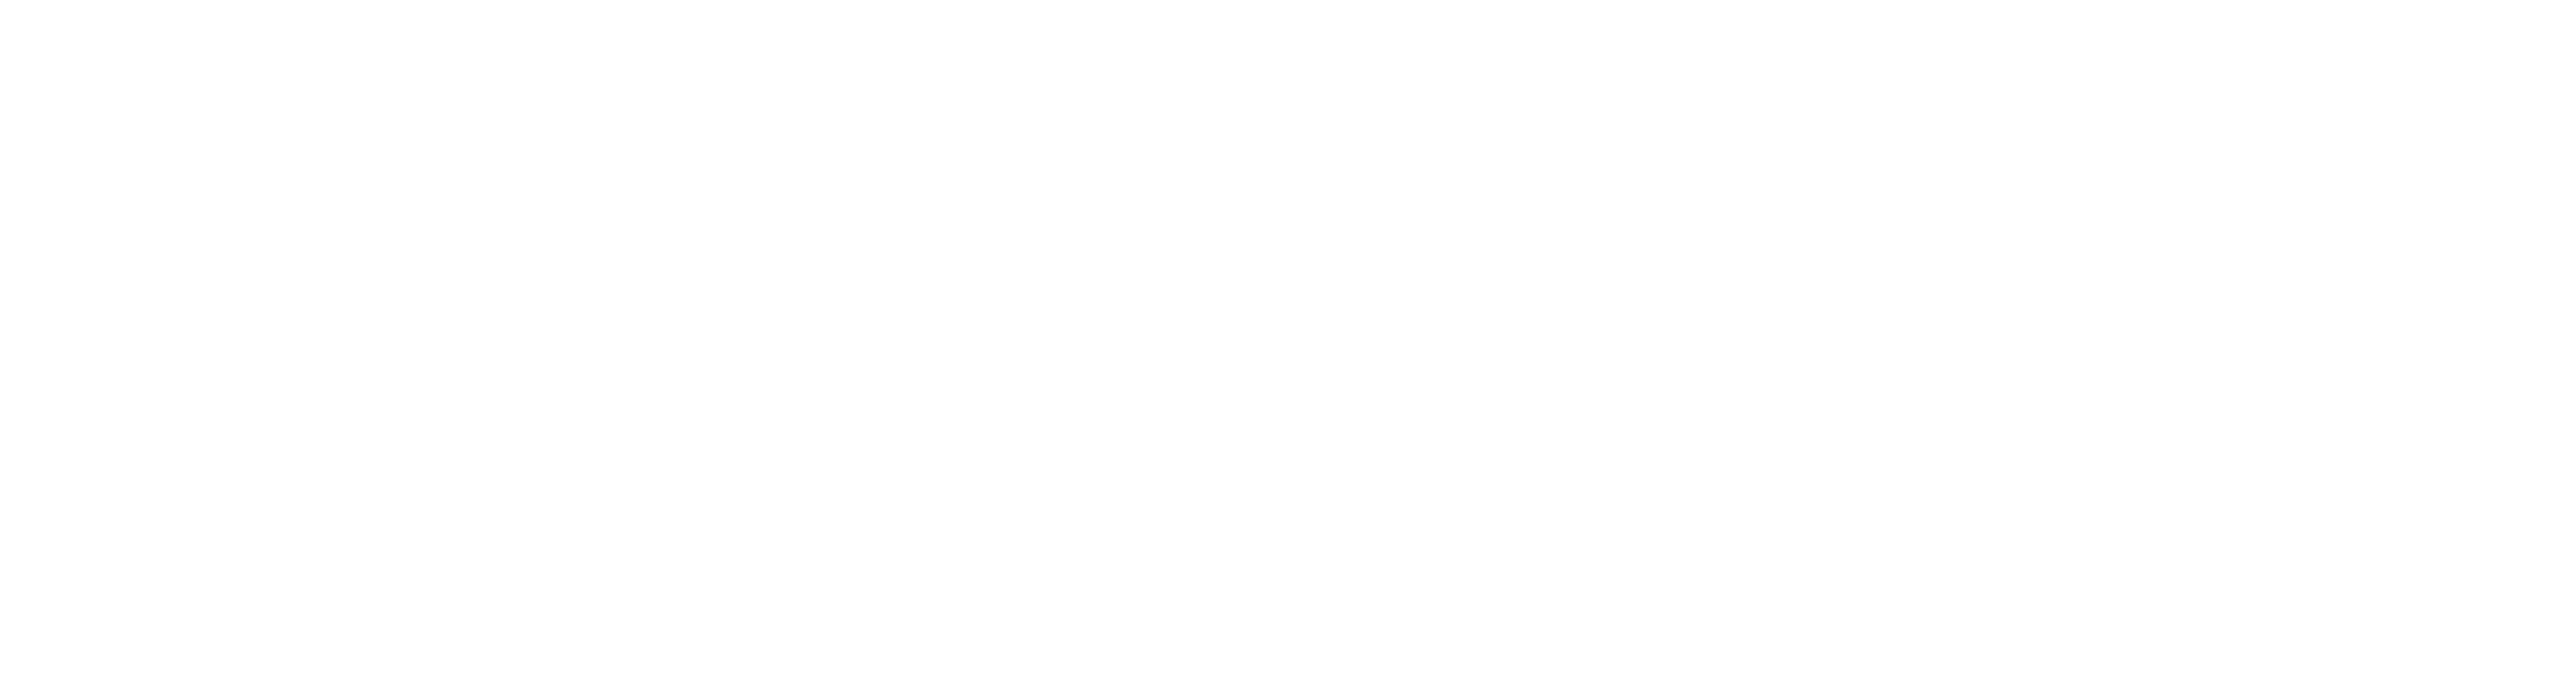 Sweet Hearts Dance logo